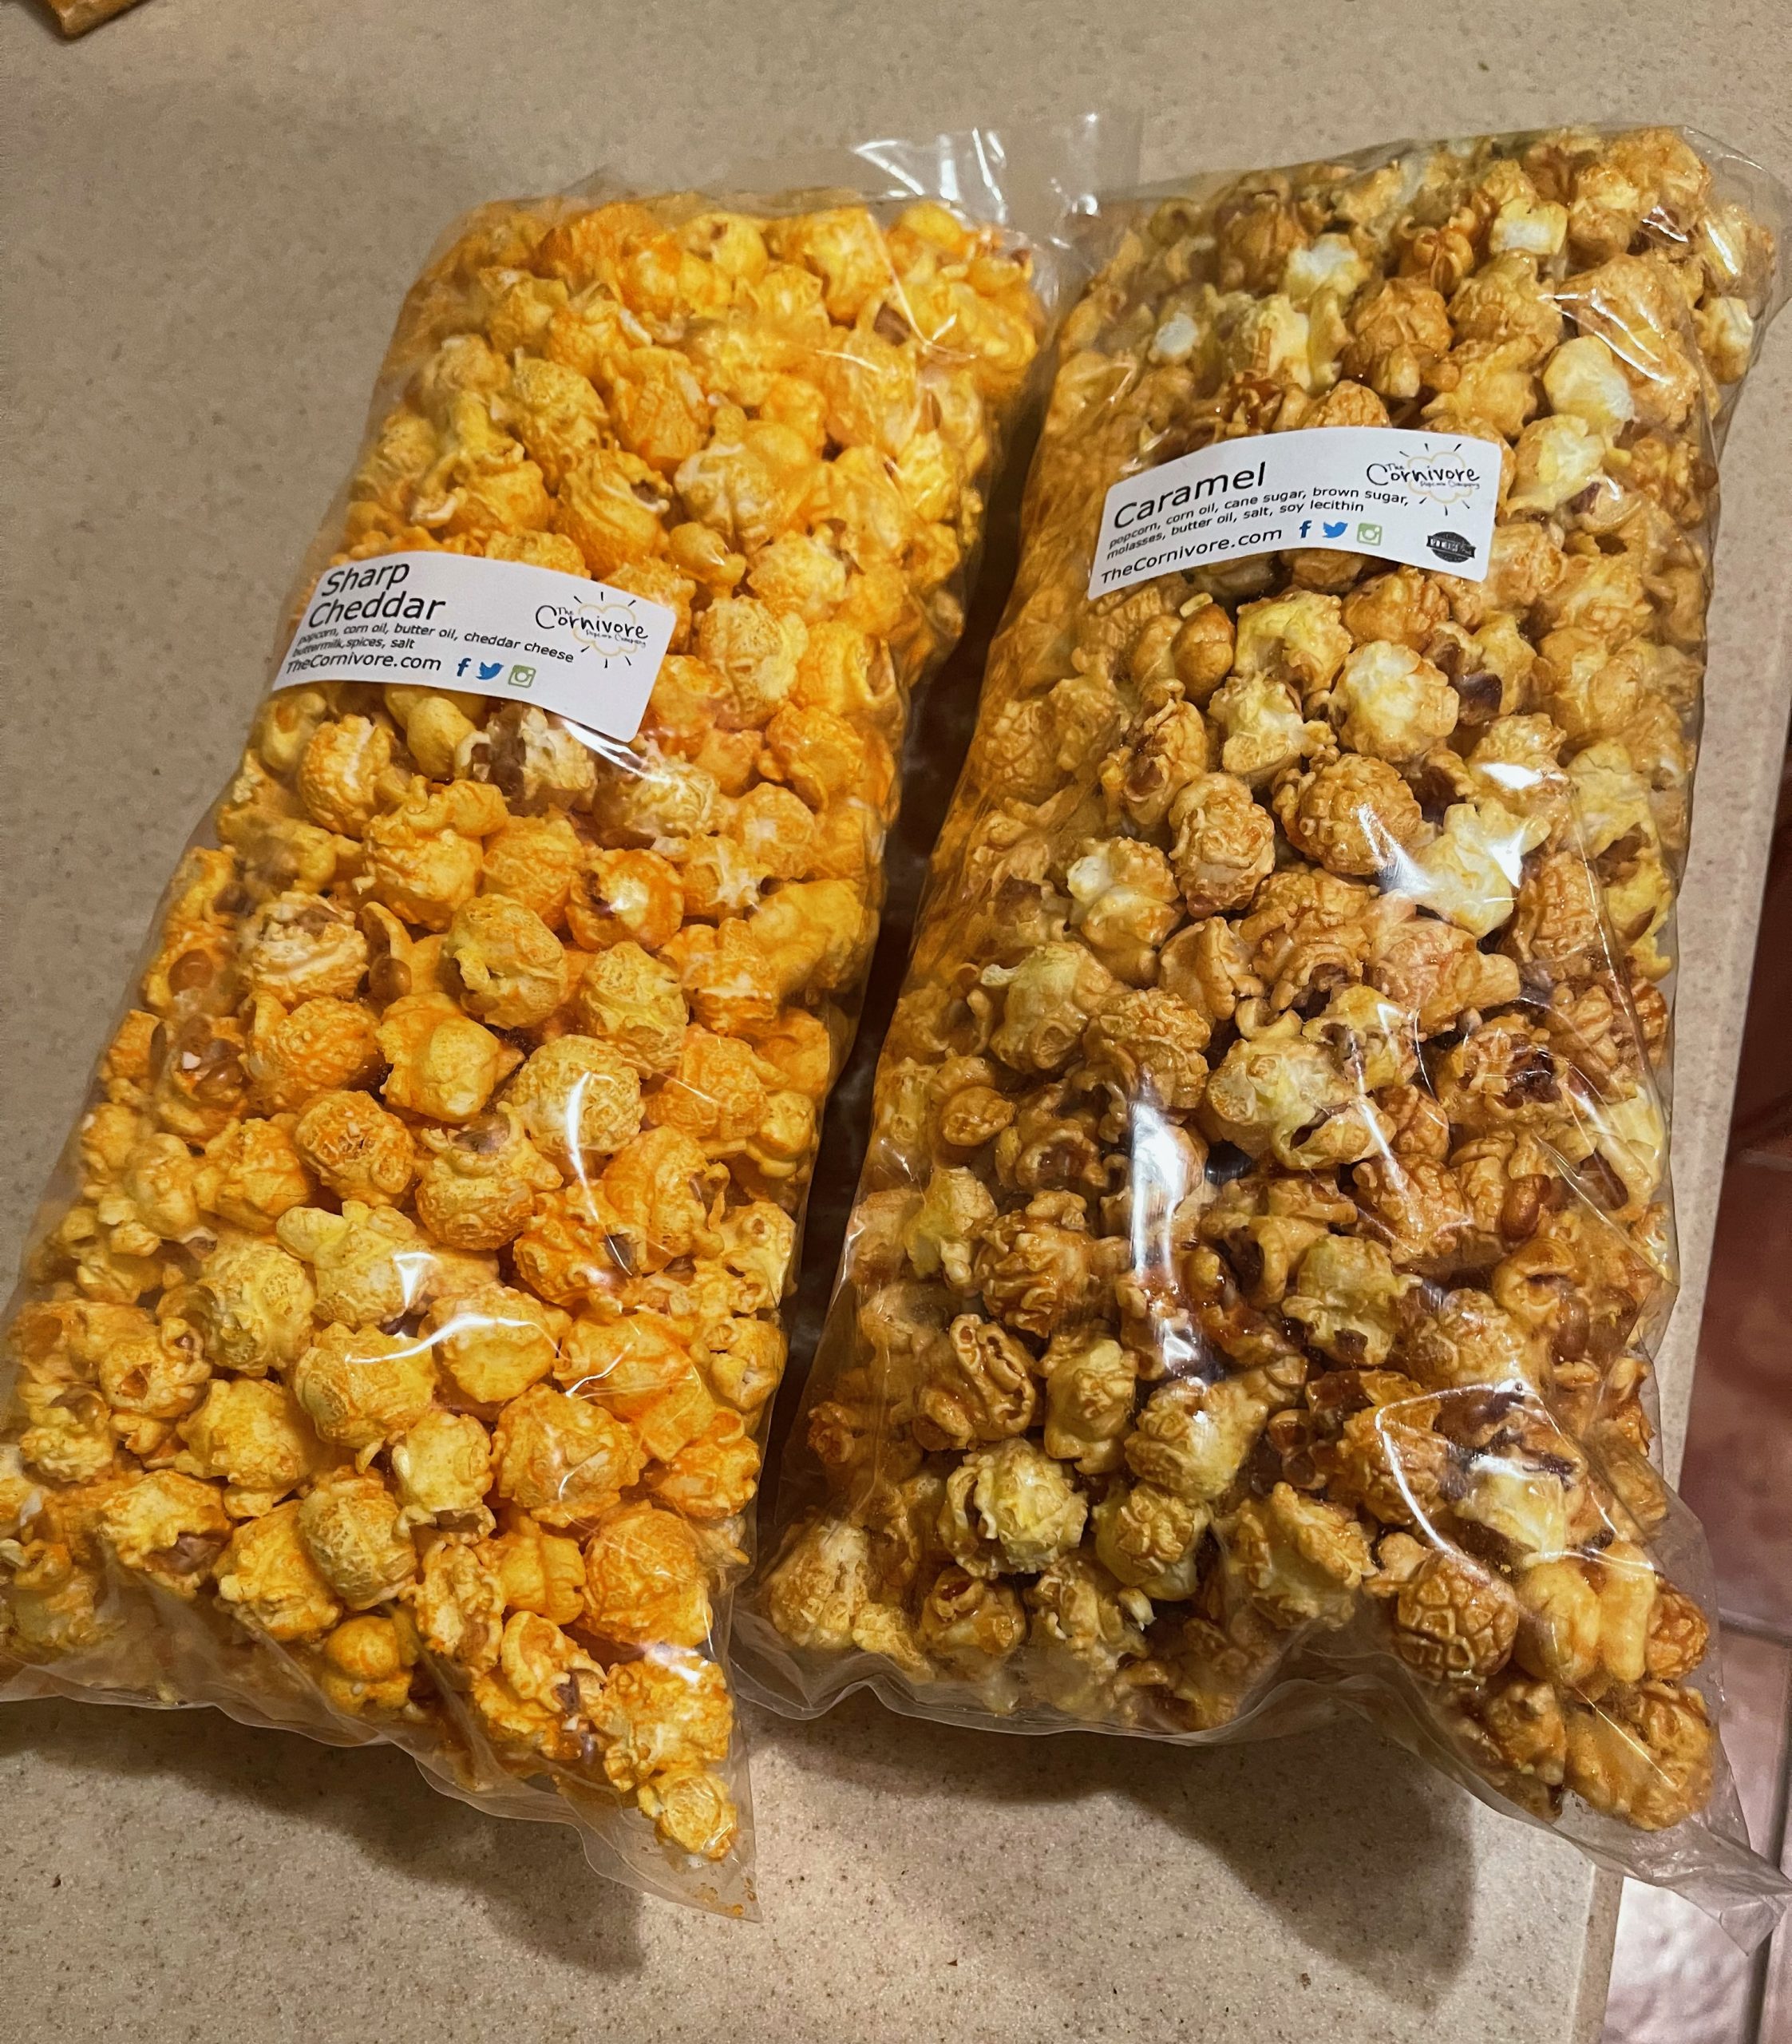 The Cornivore Popcorn Company – Albuquerque, New Mexico